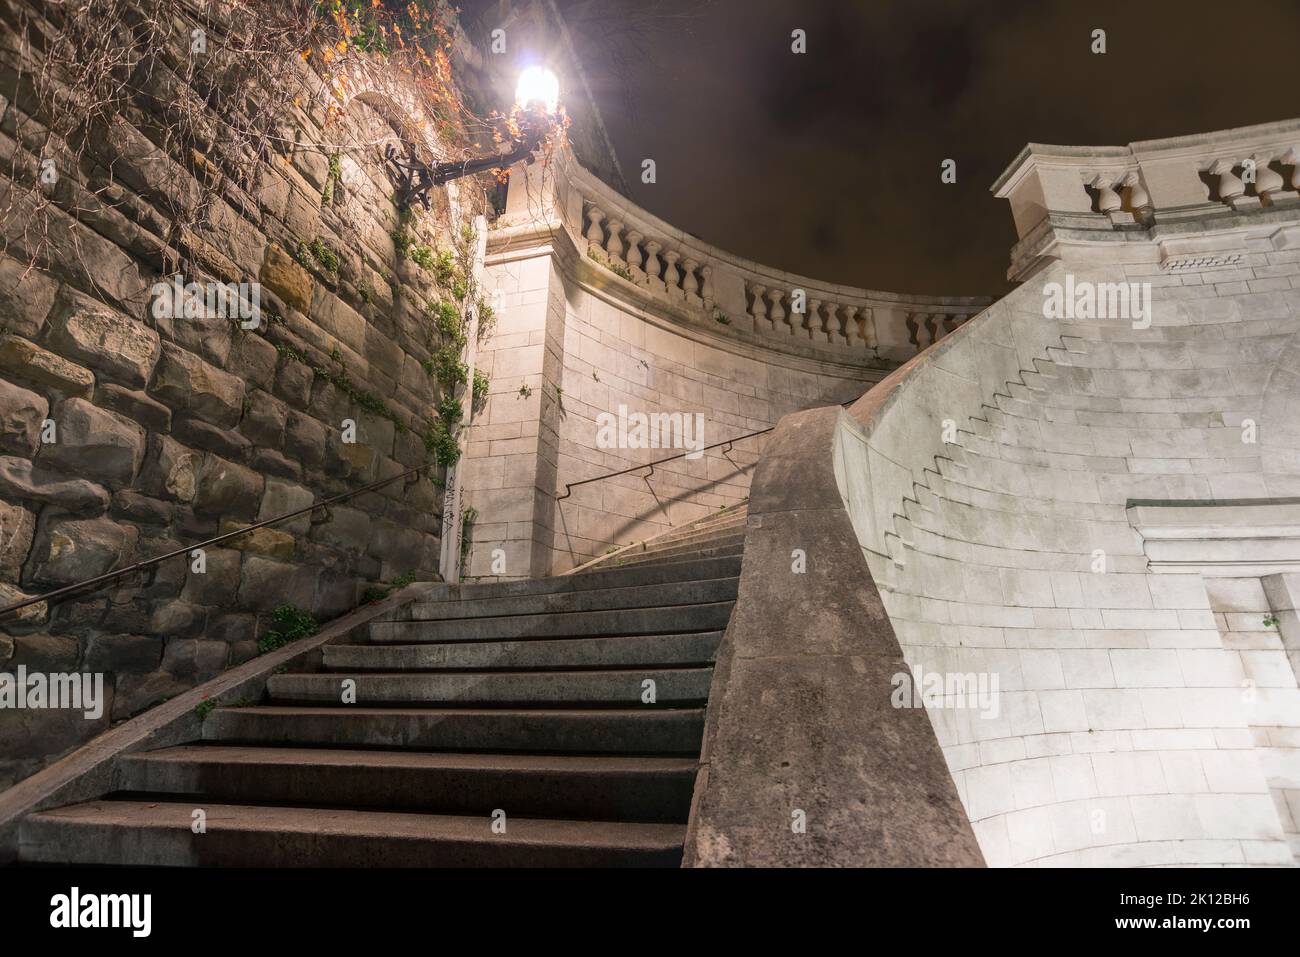 Enormes escalones de piedra de escaleras serpenteantes iluminadas por la noche en la ciudad de Trieste, Italia Foto de stock